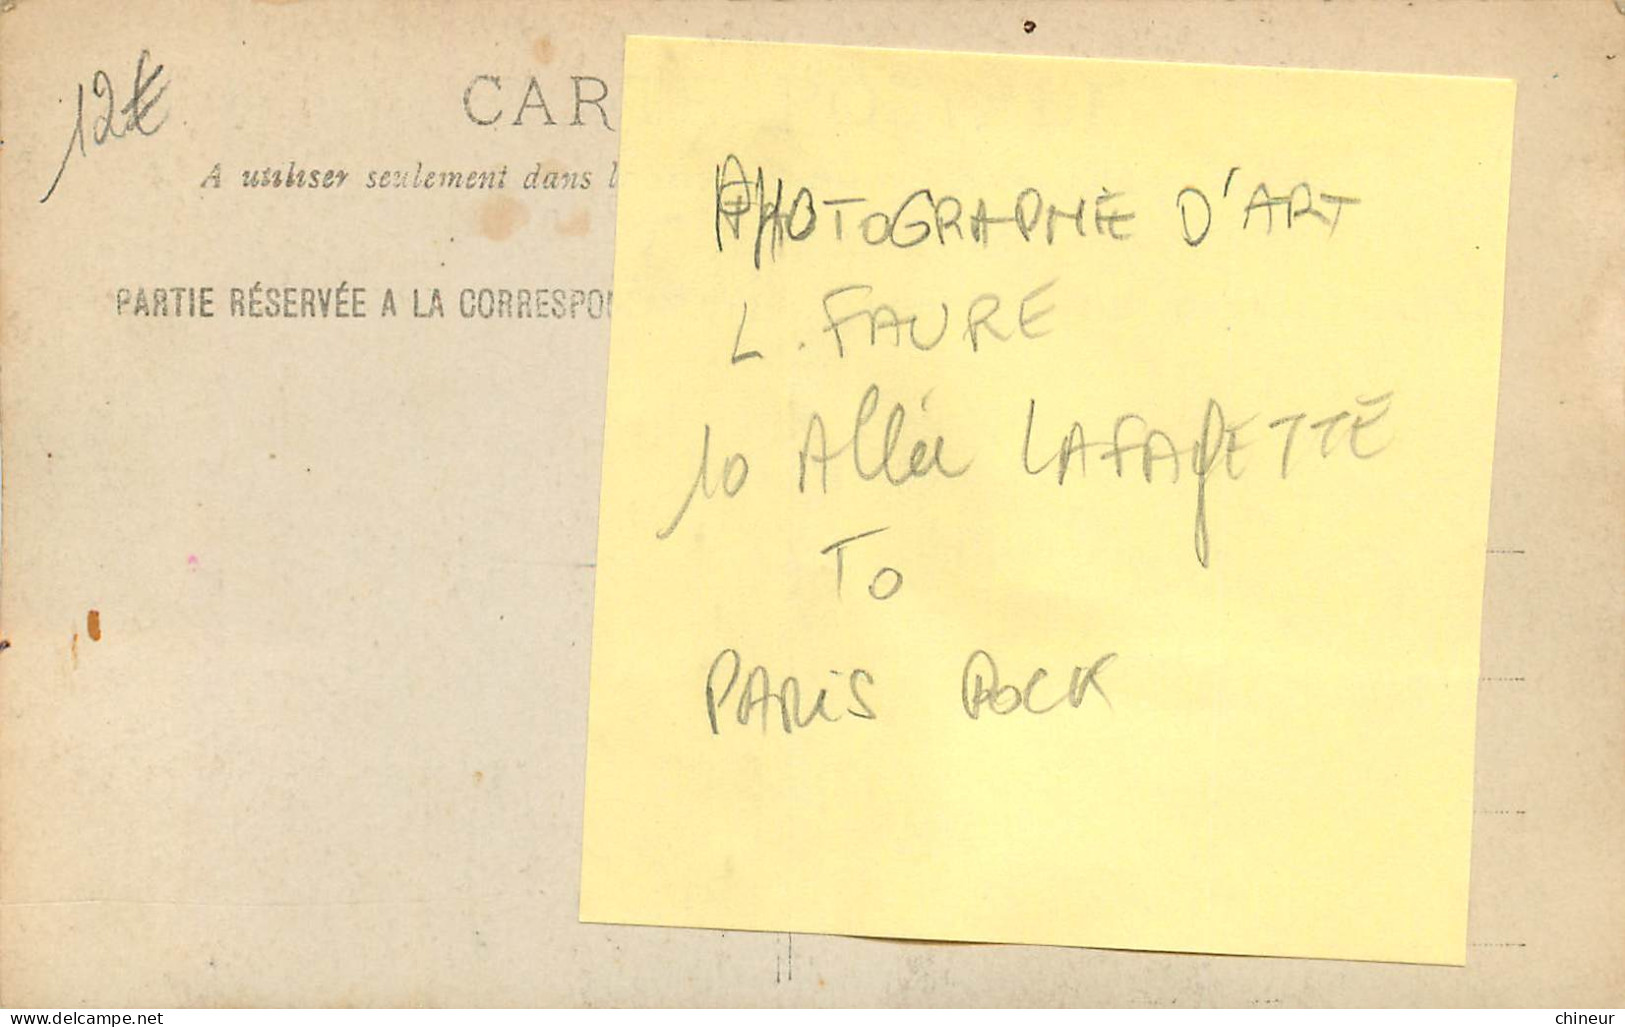 CARTE PHOTO AUTOMOBILE TACOT PHOTOGRAPHE D'ART L.FAURE 10 ALLEE LAFAYETTE PARIS POCK - Taxis & Huurvoertuigen